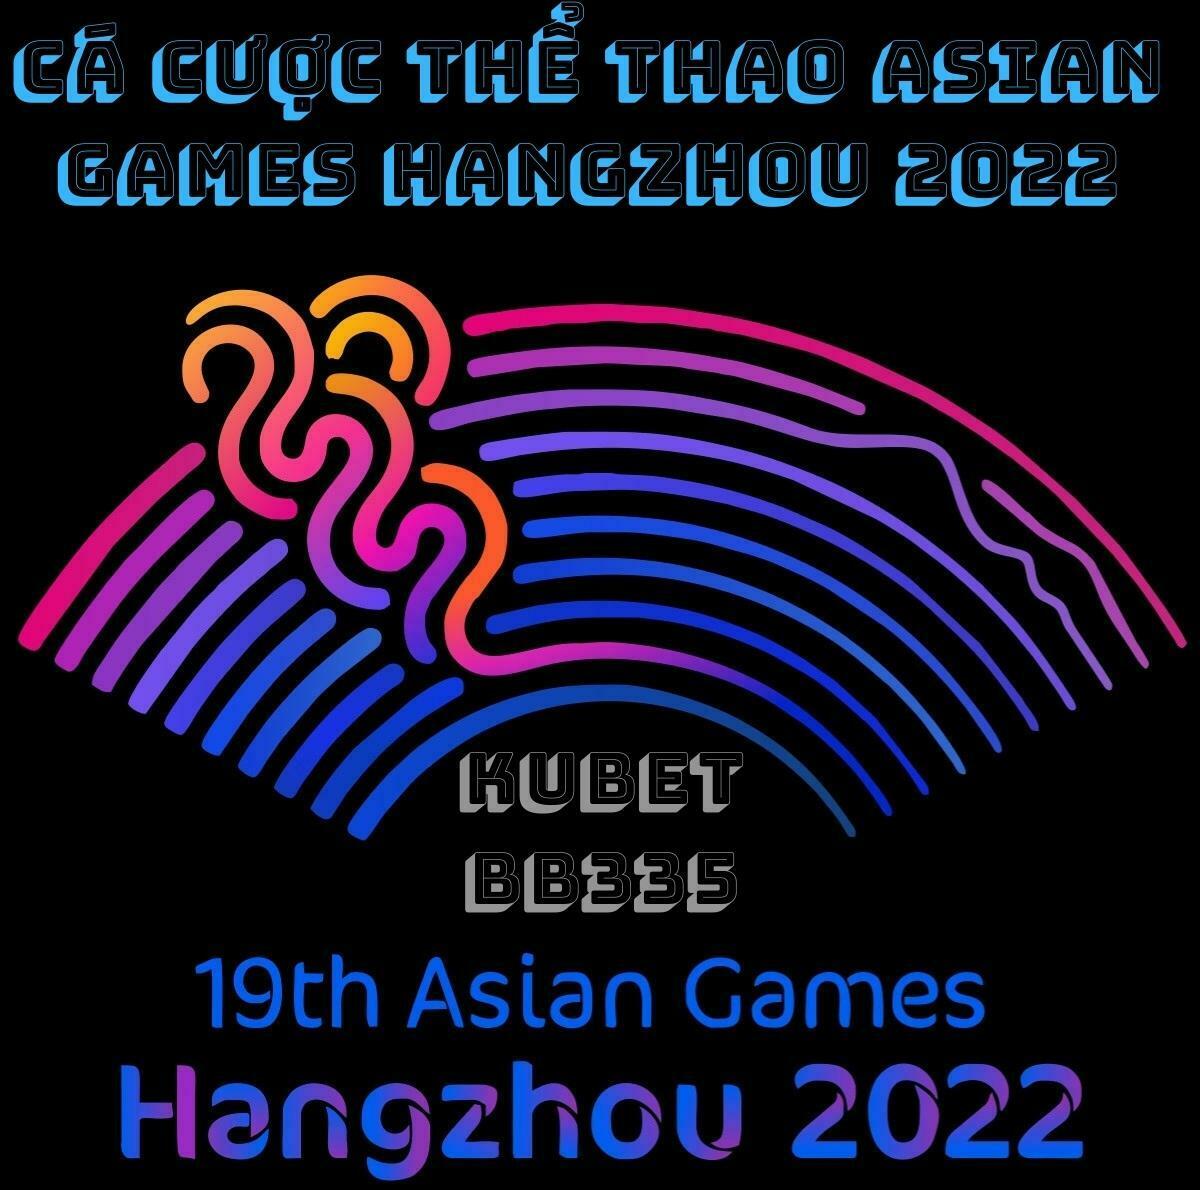 Xem Phát Trực Tiếp Asian Games Hangzhou 2022 Ở Đâu? Cá Cược Thể Thao Asian Games Hangzhou 2022 Tại Đâu Uy Tín?